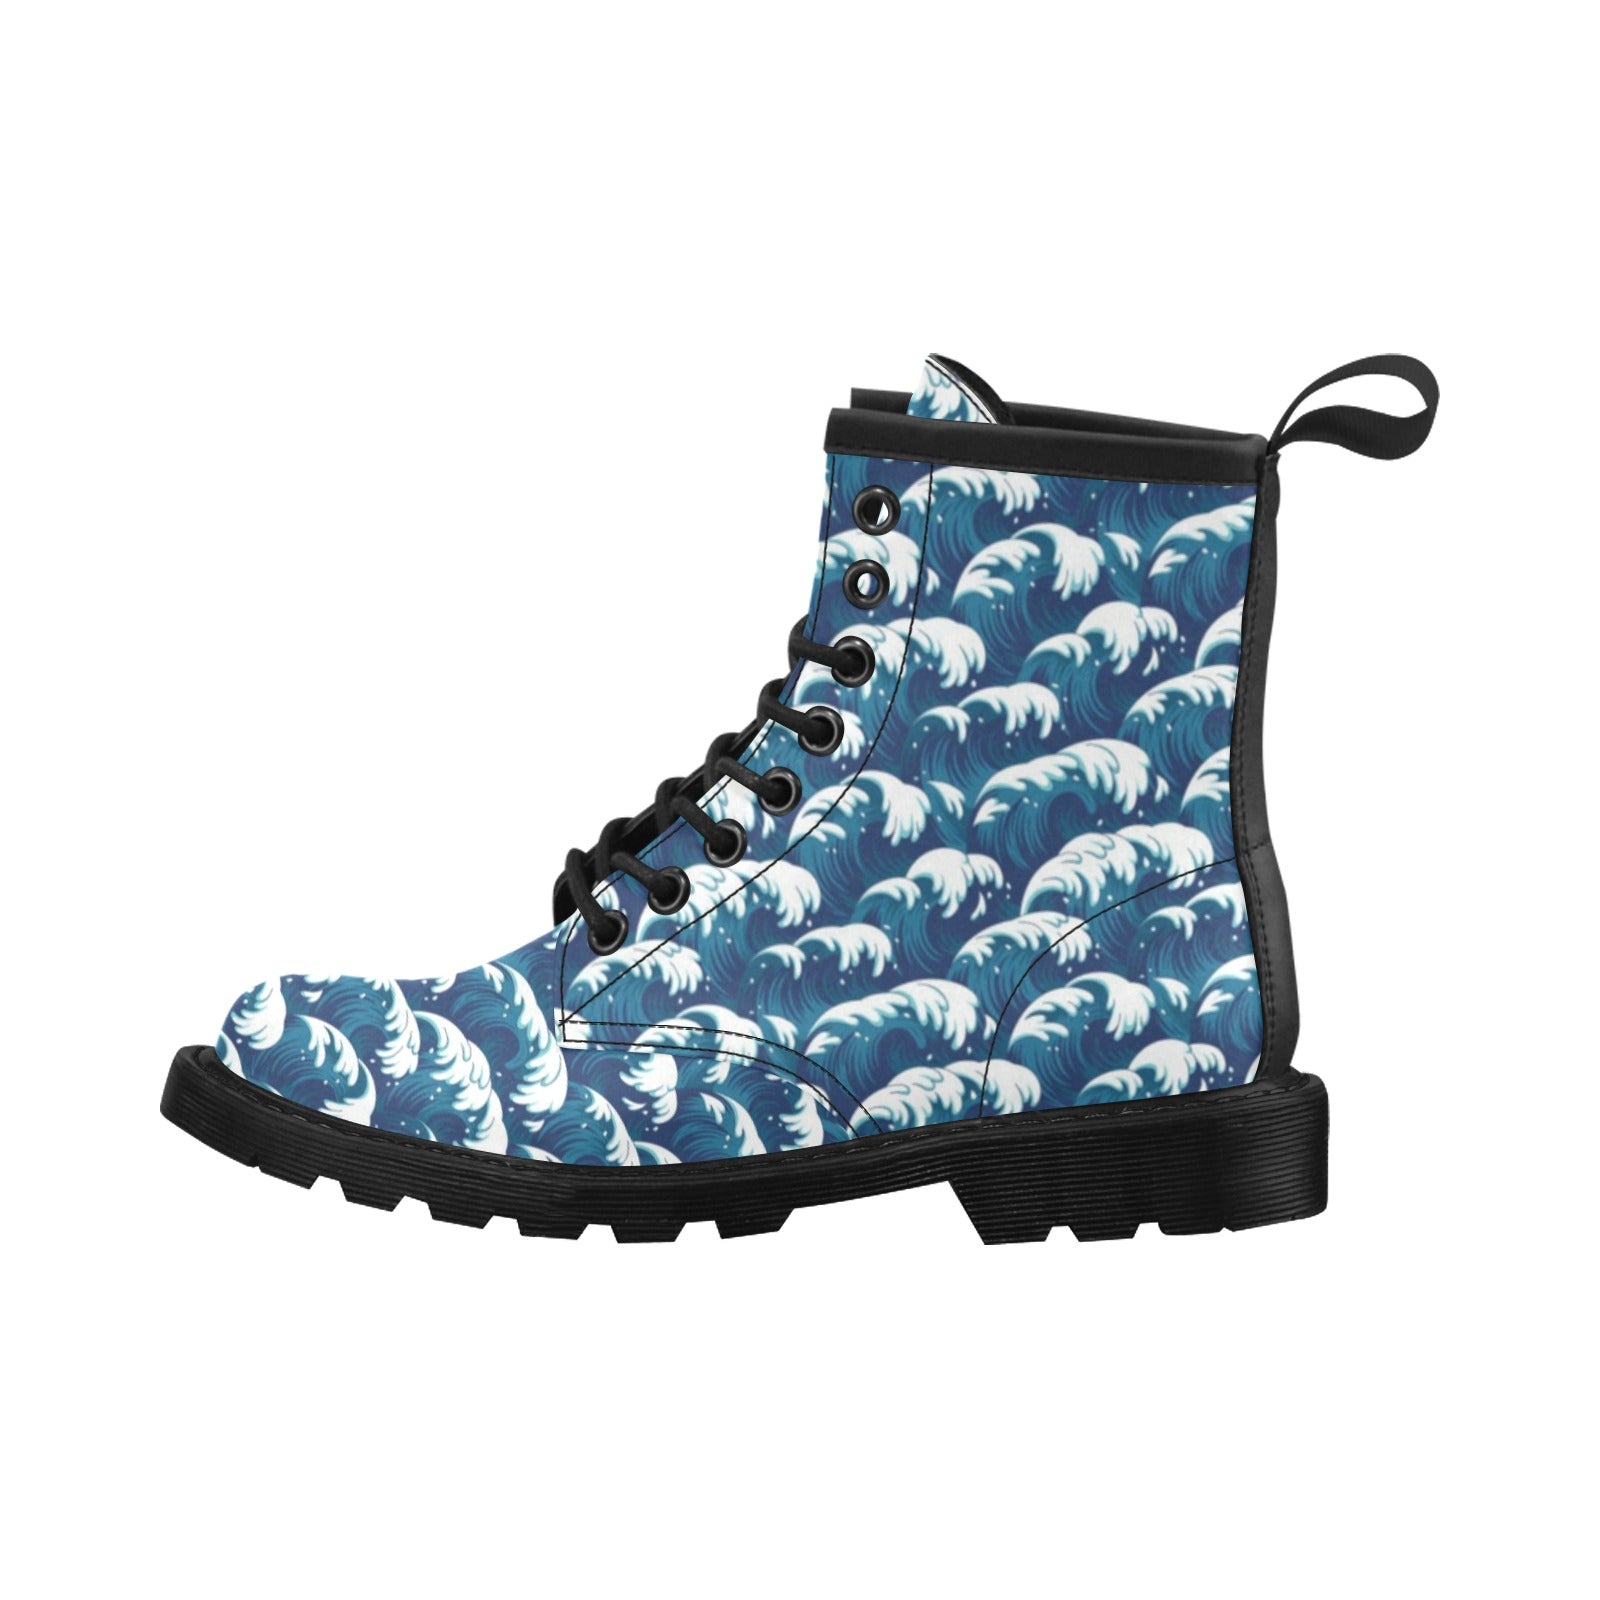 Ocean Wave Pattern Print Women's Boots